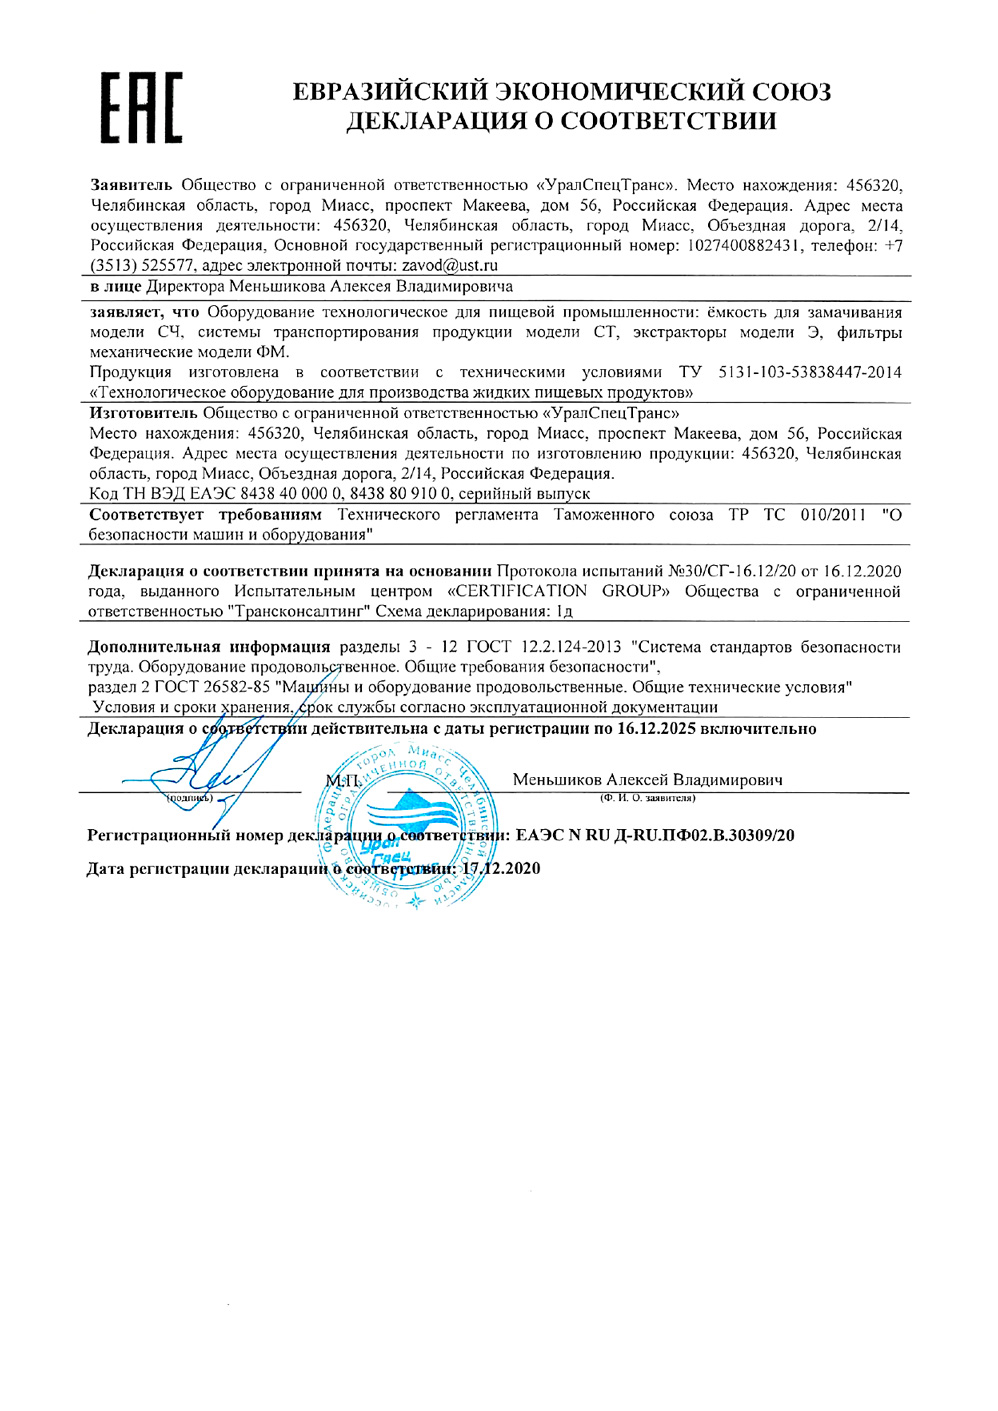 Декларация о соответствии по 16.12.2025